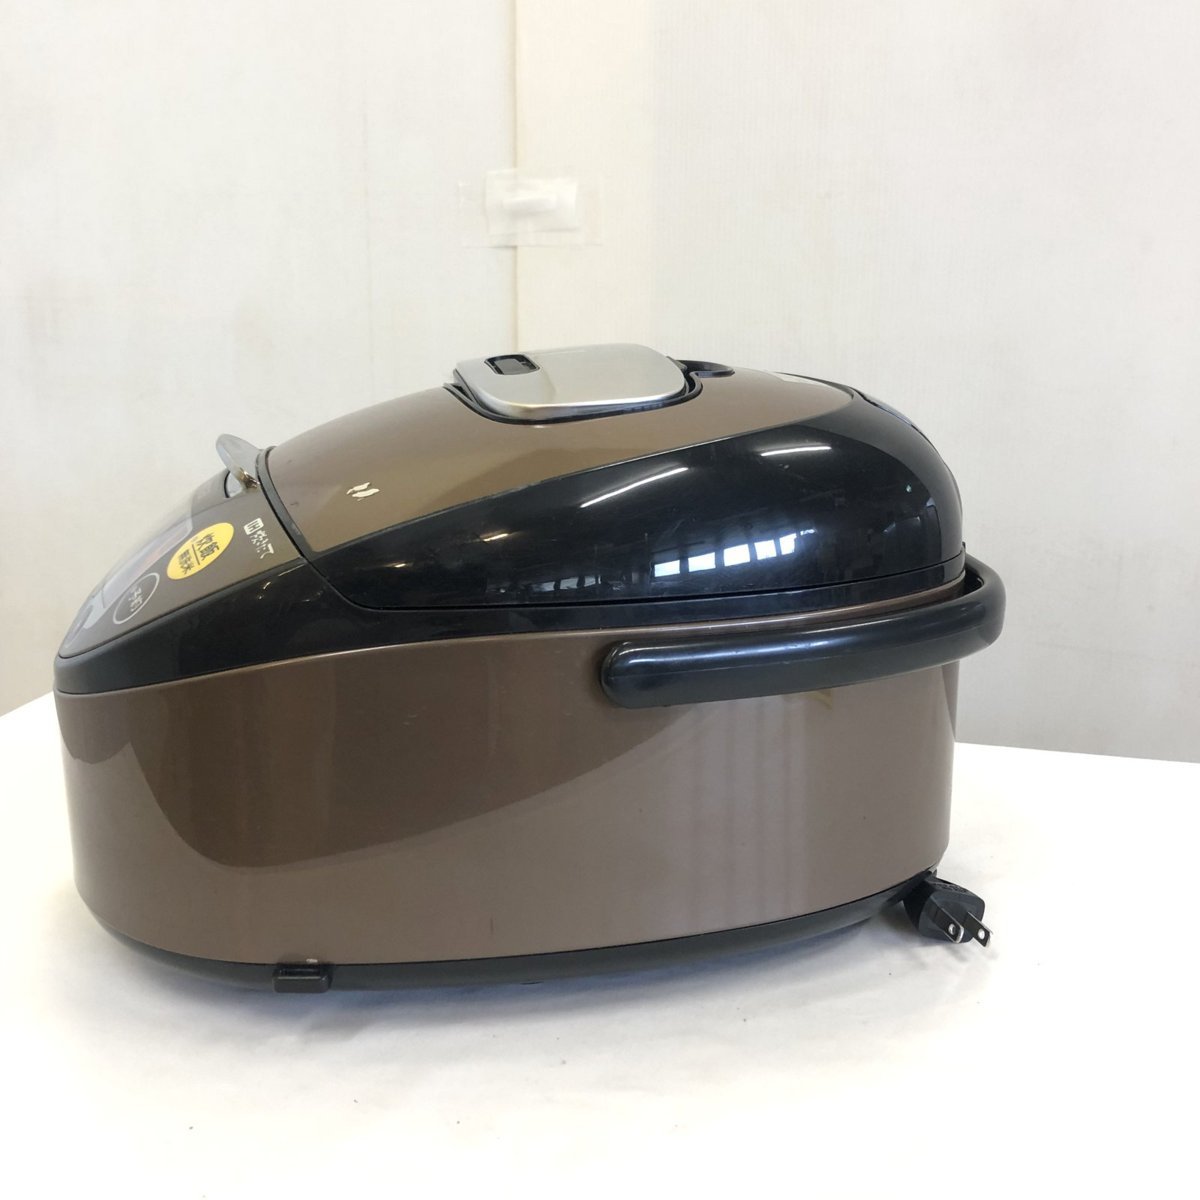 1860円 数量限定アウトレット最安価格 Tiger タイガー JKT-J100 炊飯器 5.5合 2018年製 家電